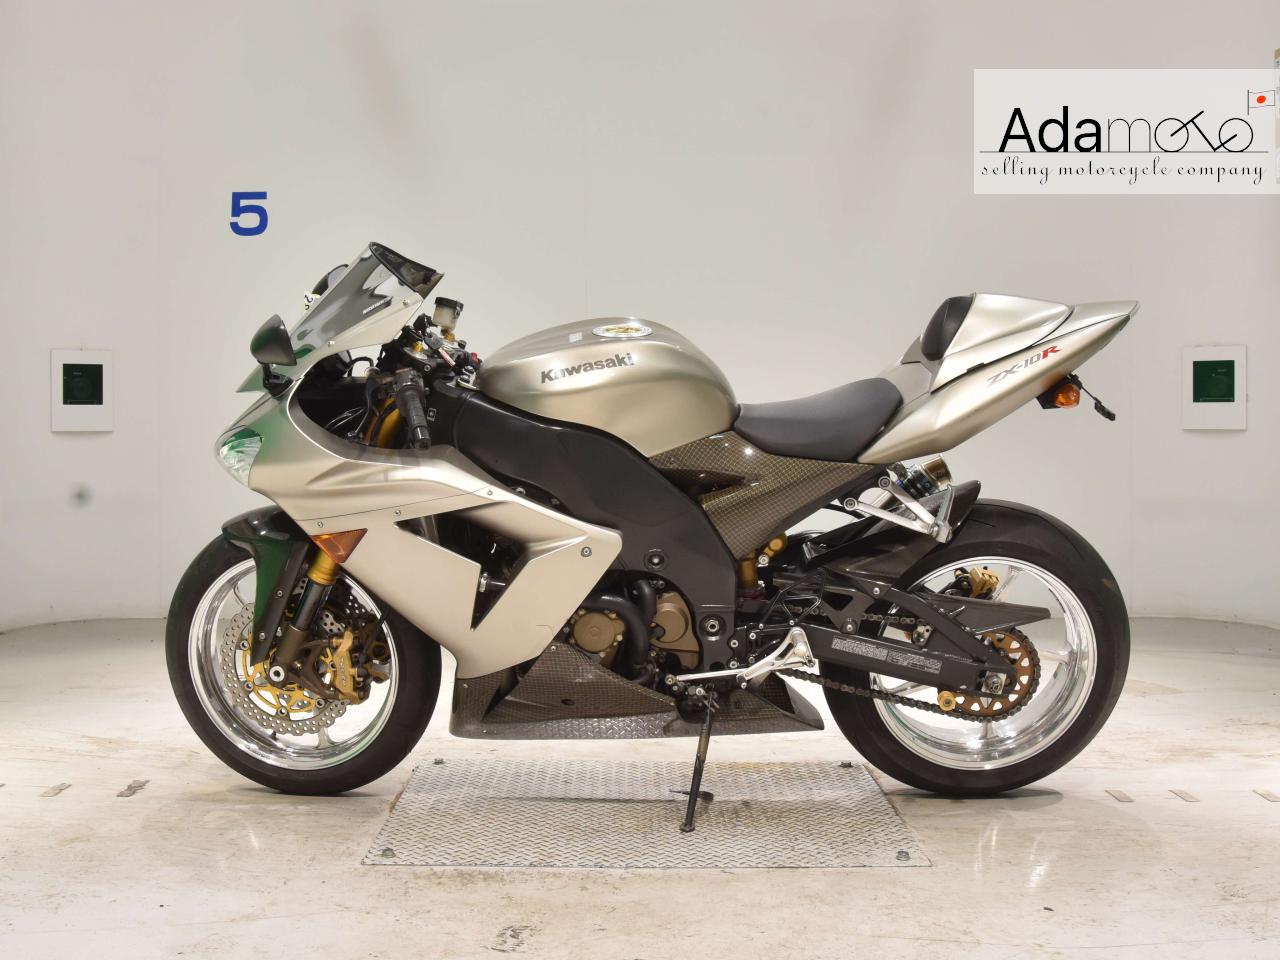 Kawasaki ZX 10R - Adamoto - Motorcycles from Japan